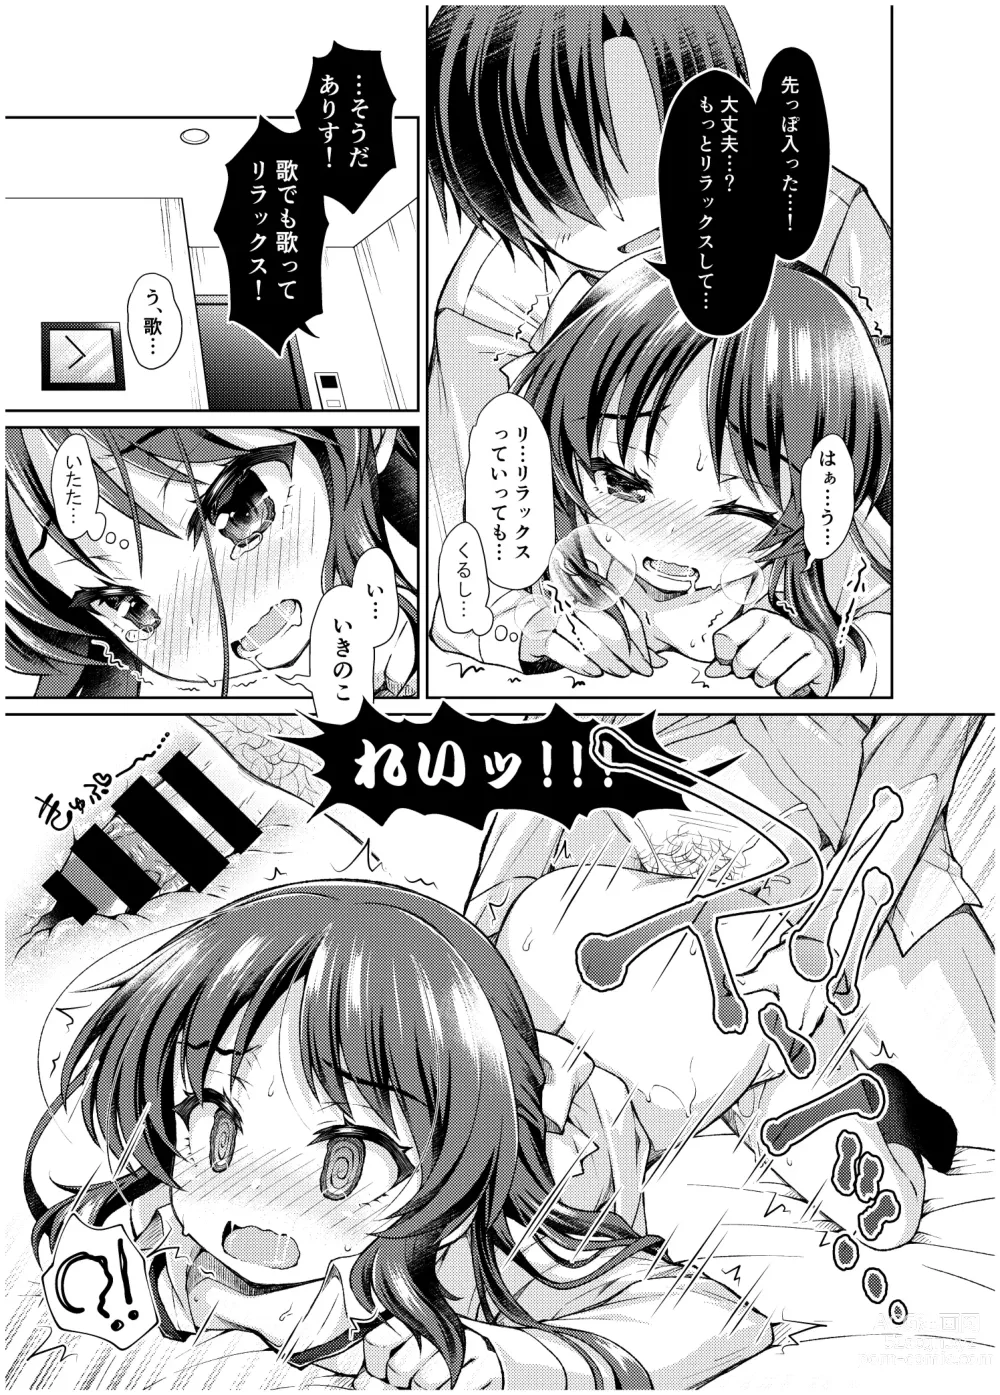 Page 32 of doujinshi Tachibana Arisu no Manga Matome